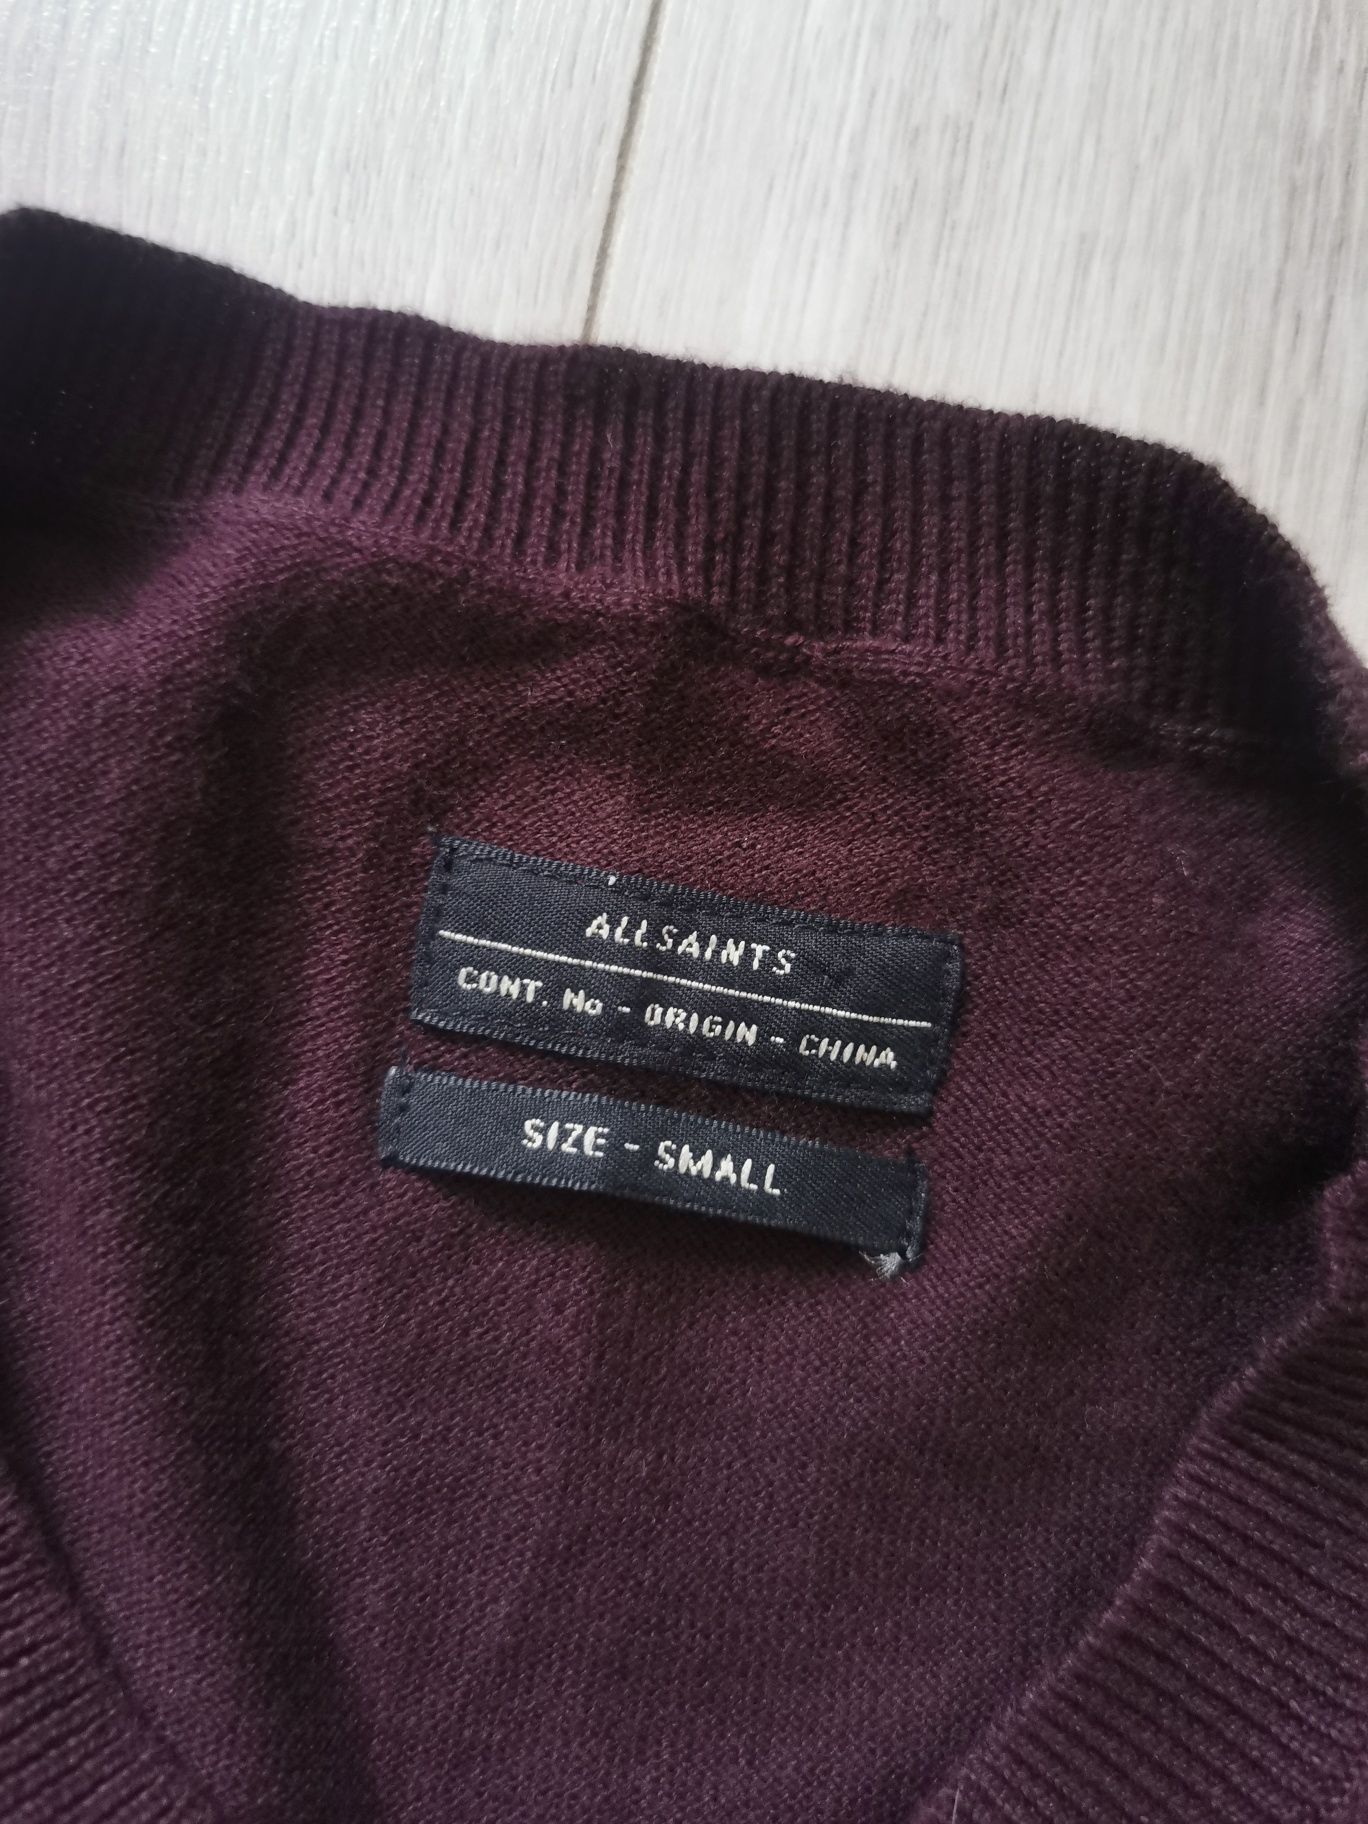 All Saints bordowy bawełniany sweter cienki 100% bawełna cotton S 36